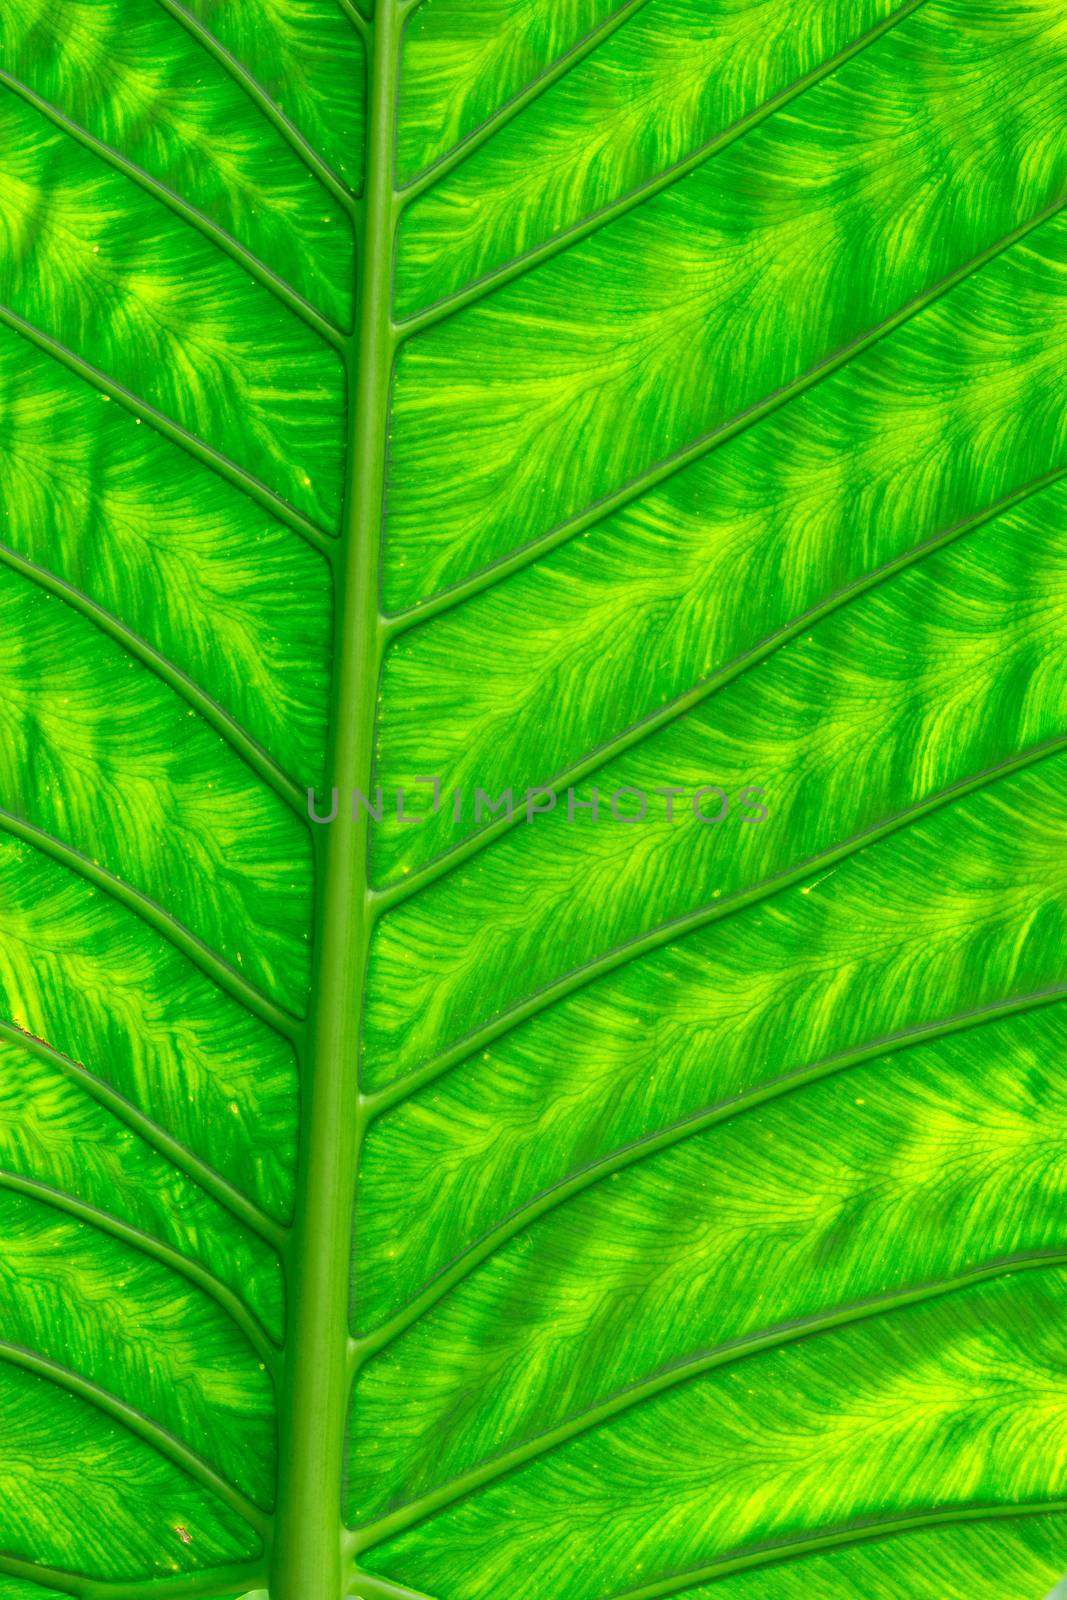  leaf texture  by Pakhnyushchyy